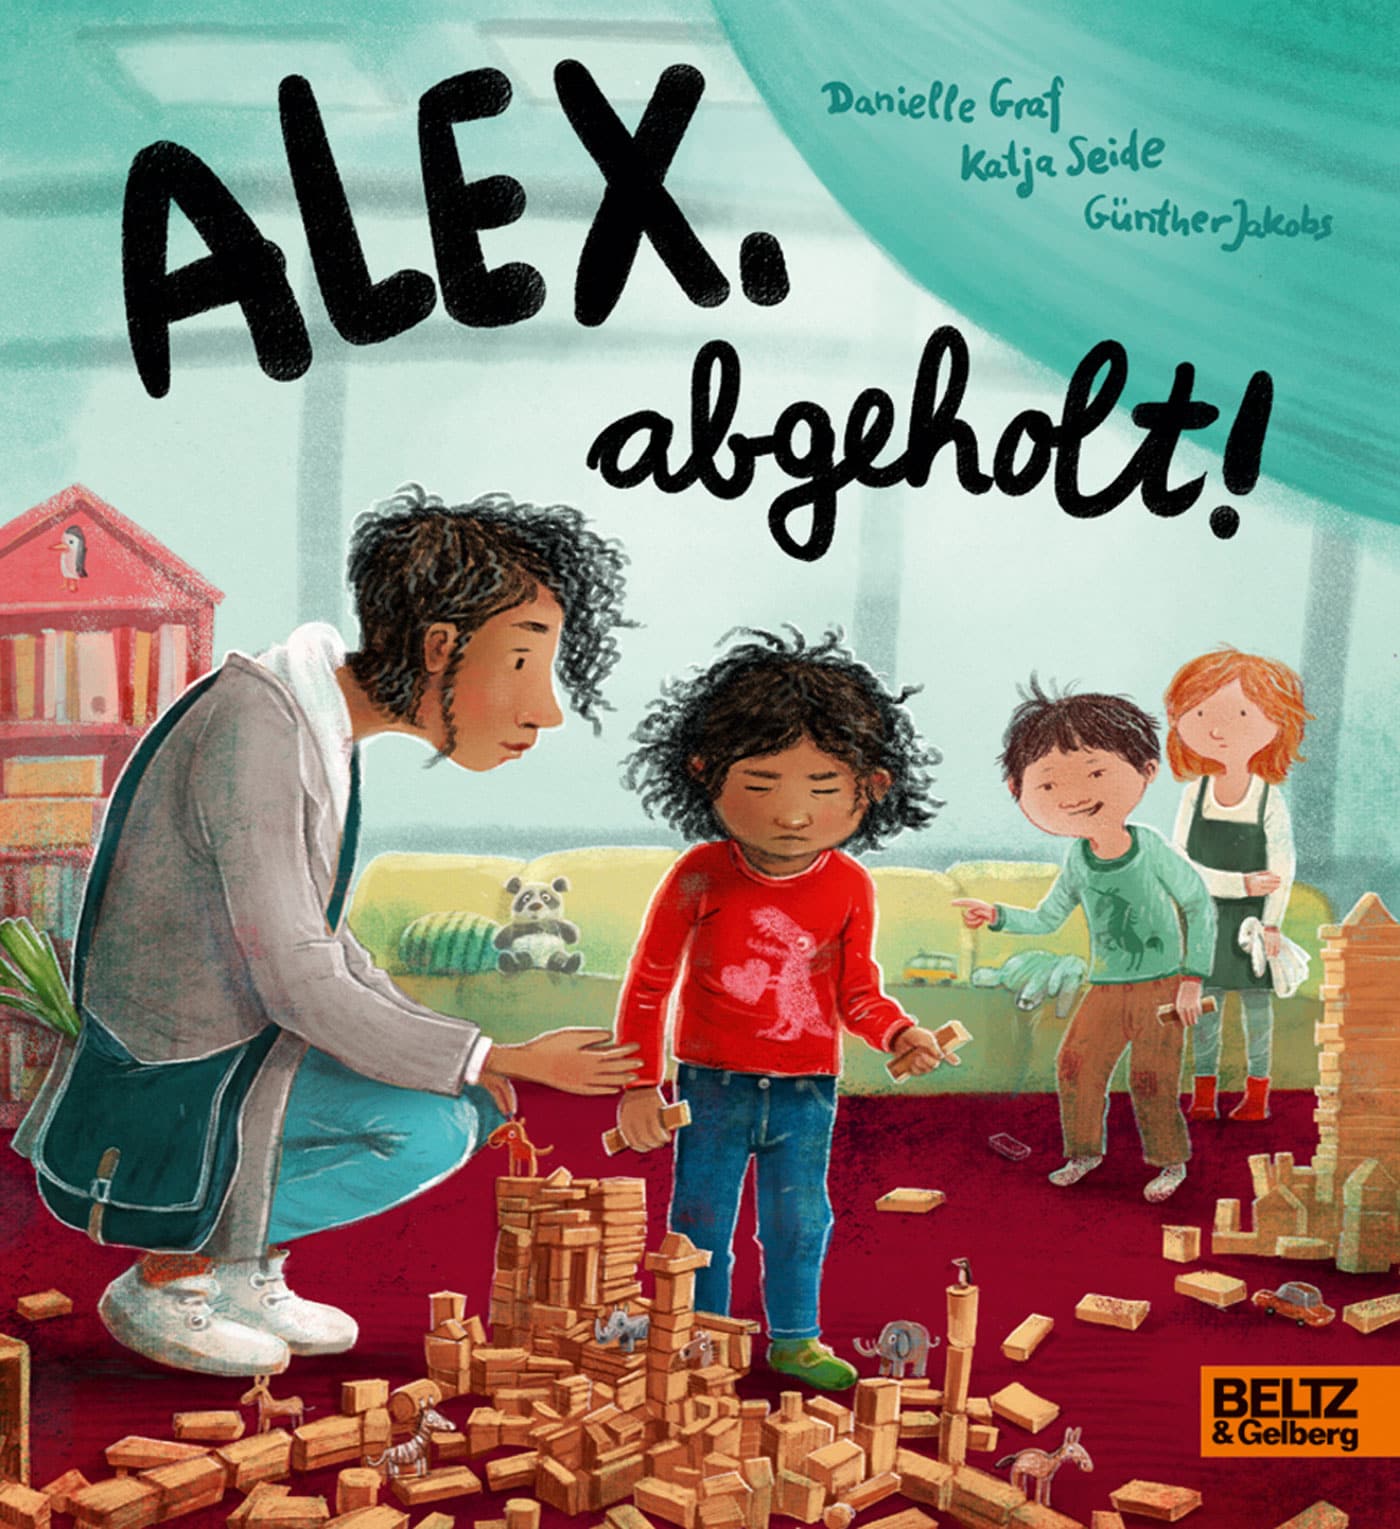 Kinderperspektiven – Kinderbuch-Tipp: Alex abgeholt! // HIMBEER